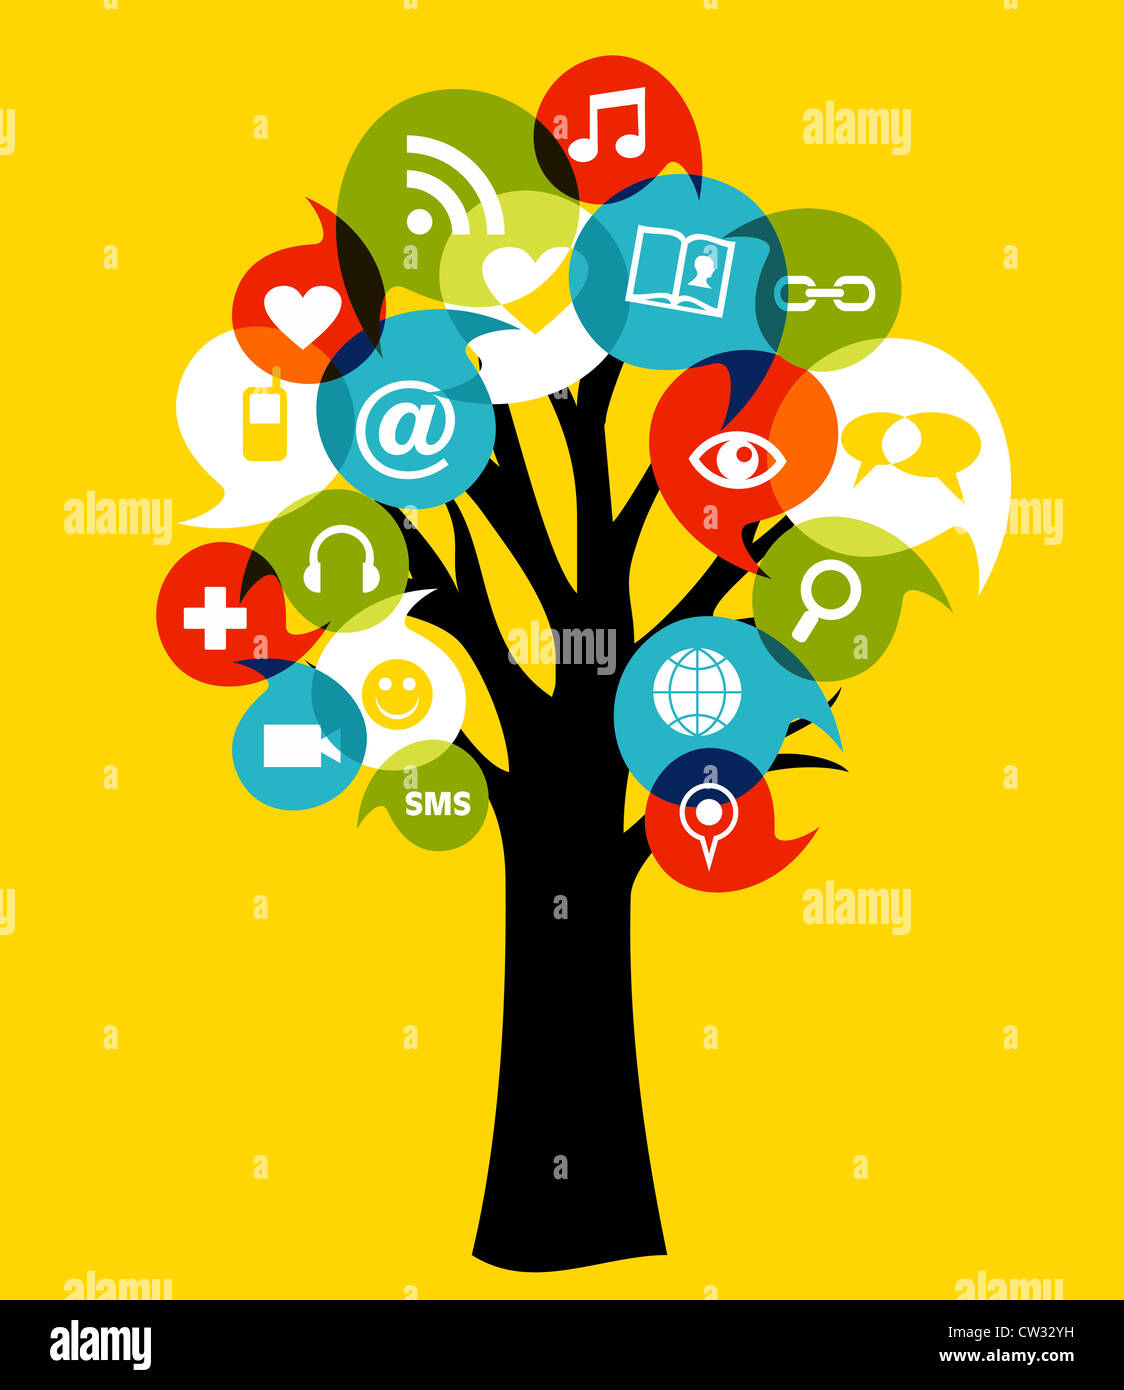 Réseau social media icons arbre avec des feuilles. Couches d'illustration vectorielle pour une manipulation facile et coloris. Banque D'Images